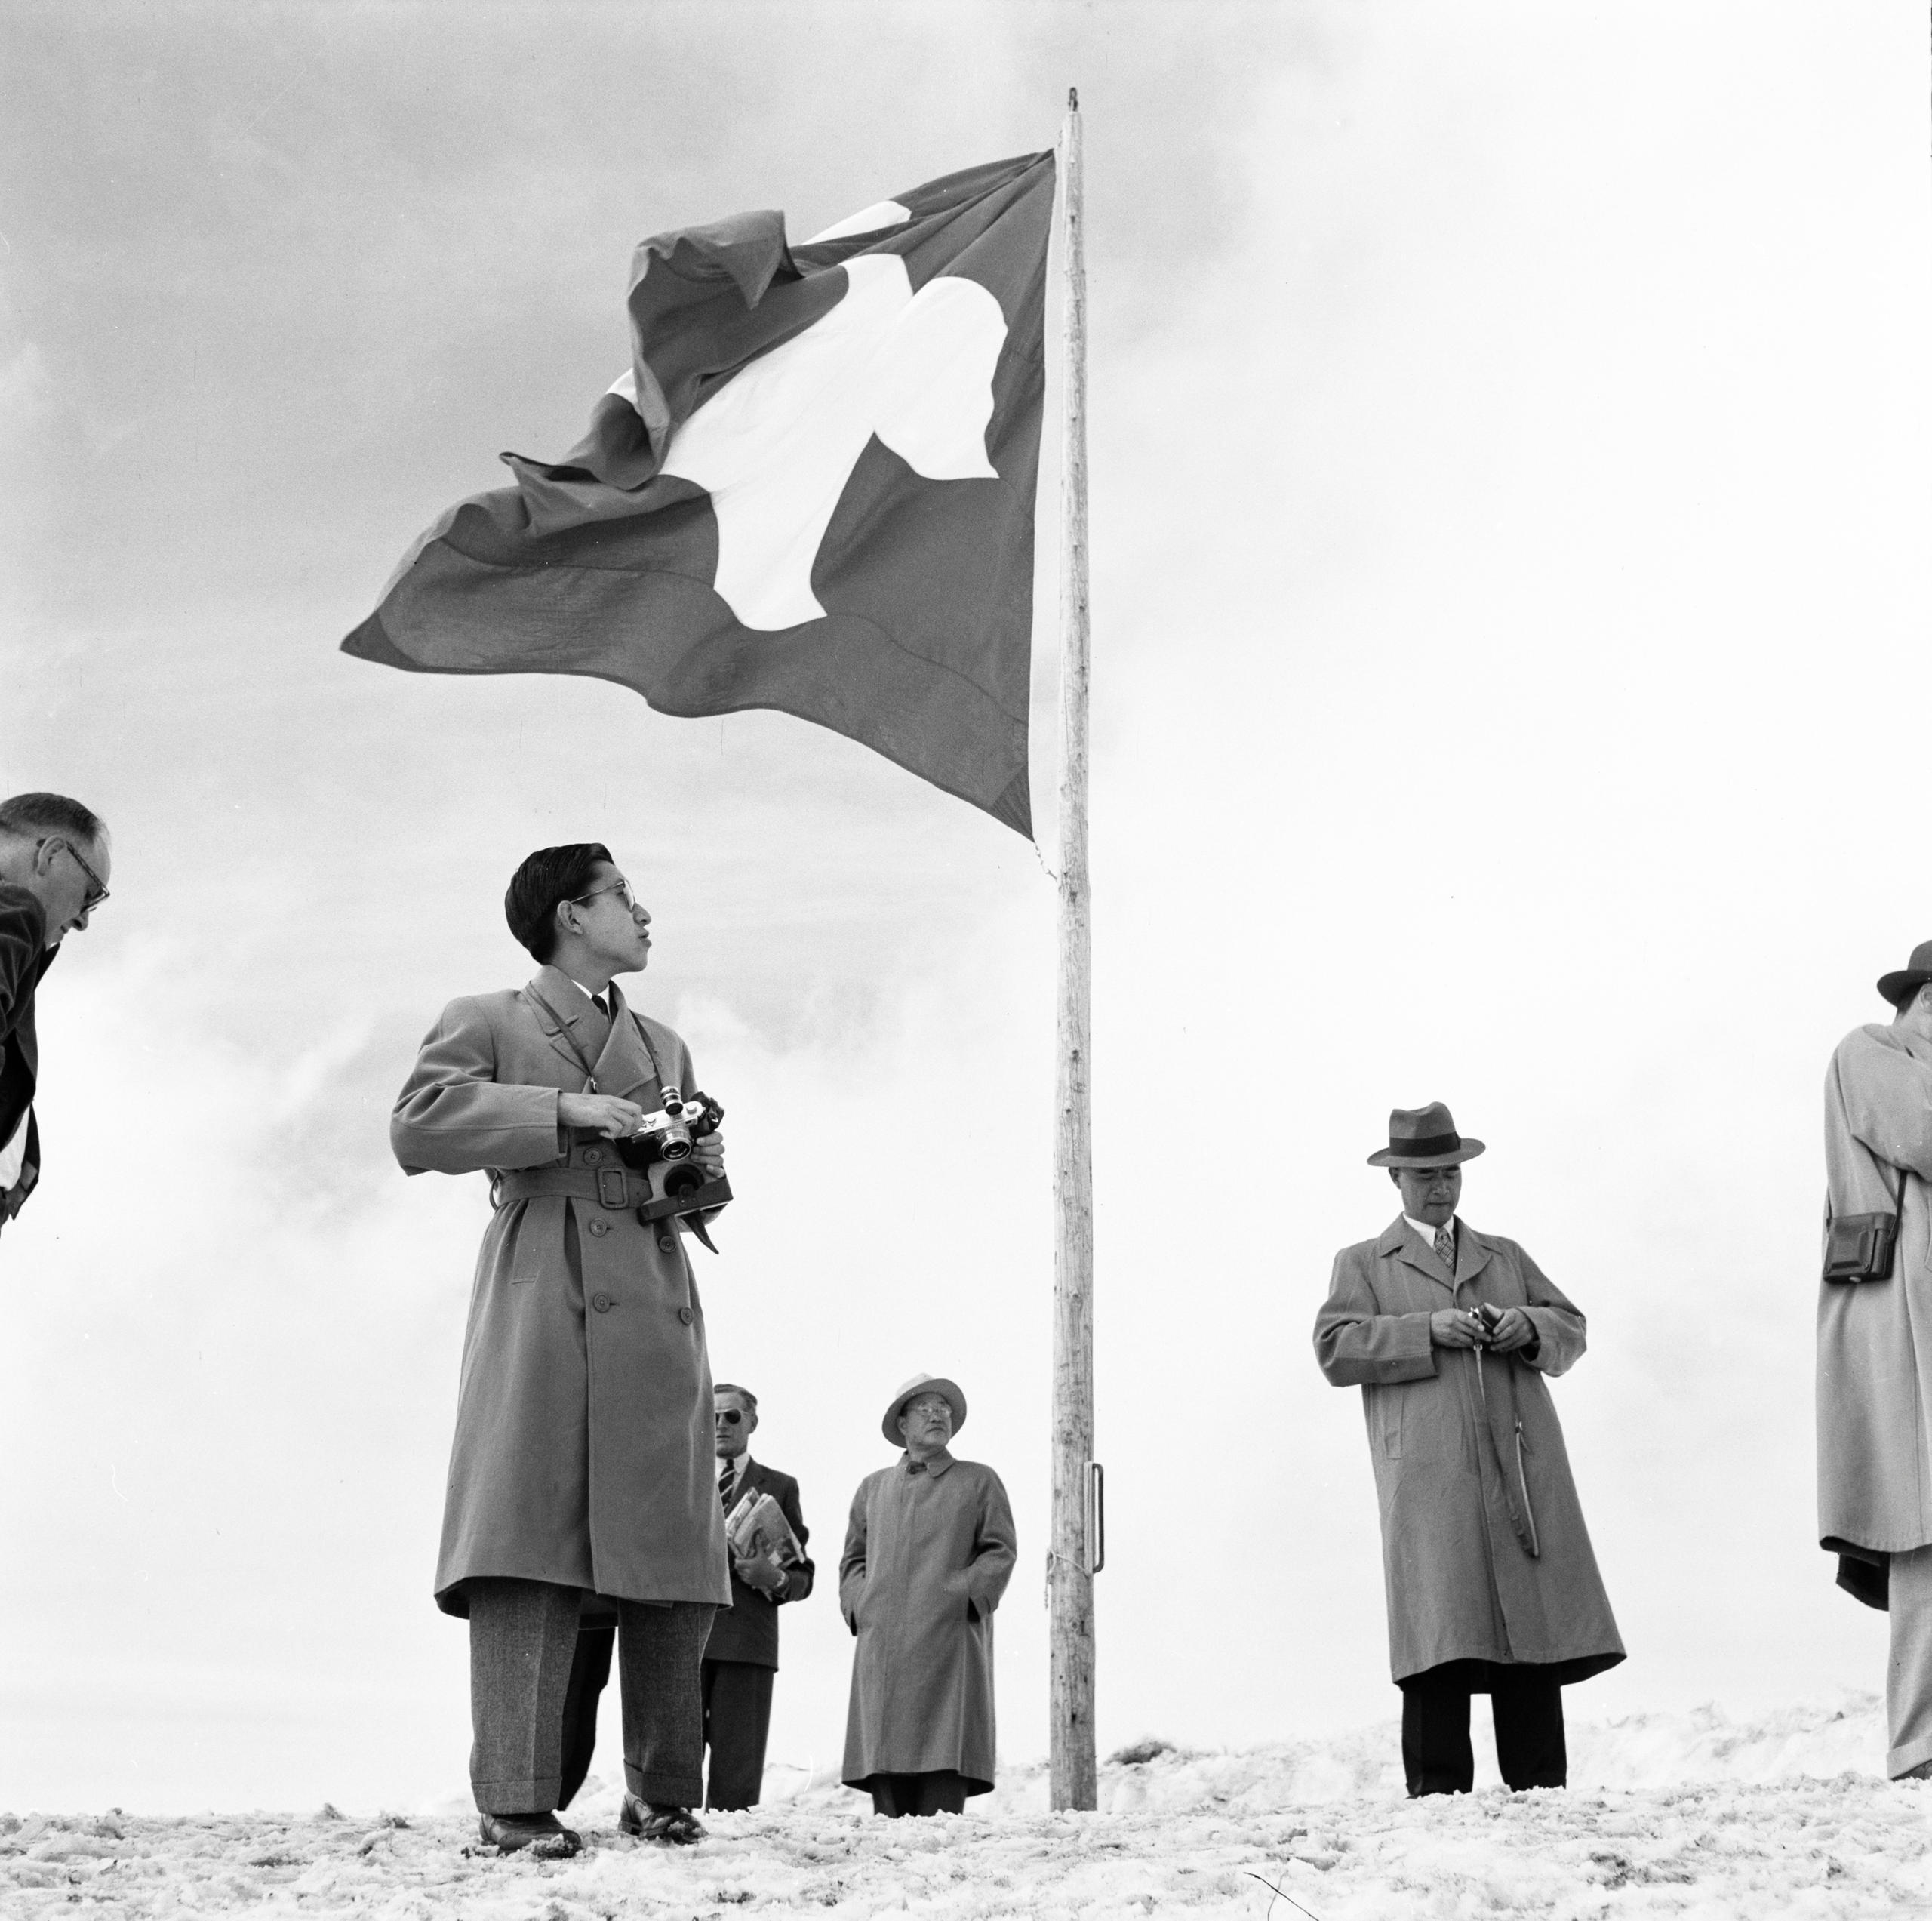 Visita de Akihito a Suiza en 1953